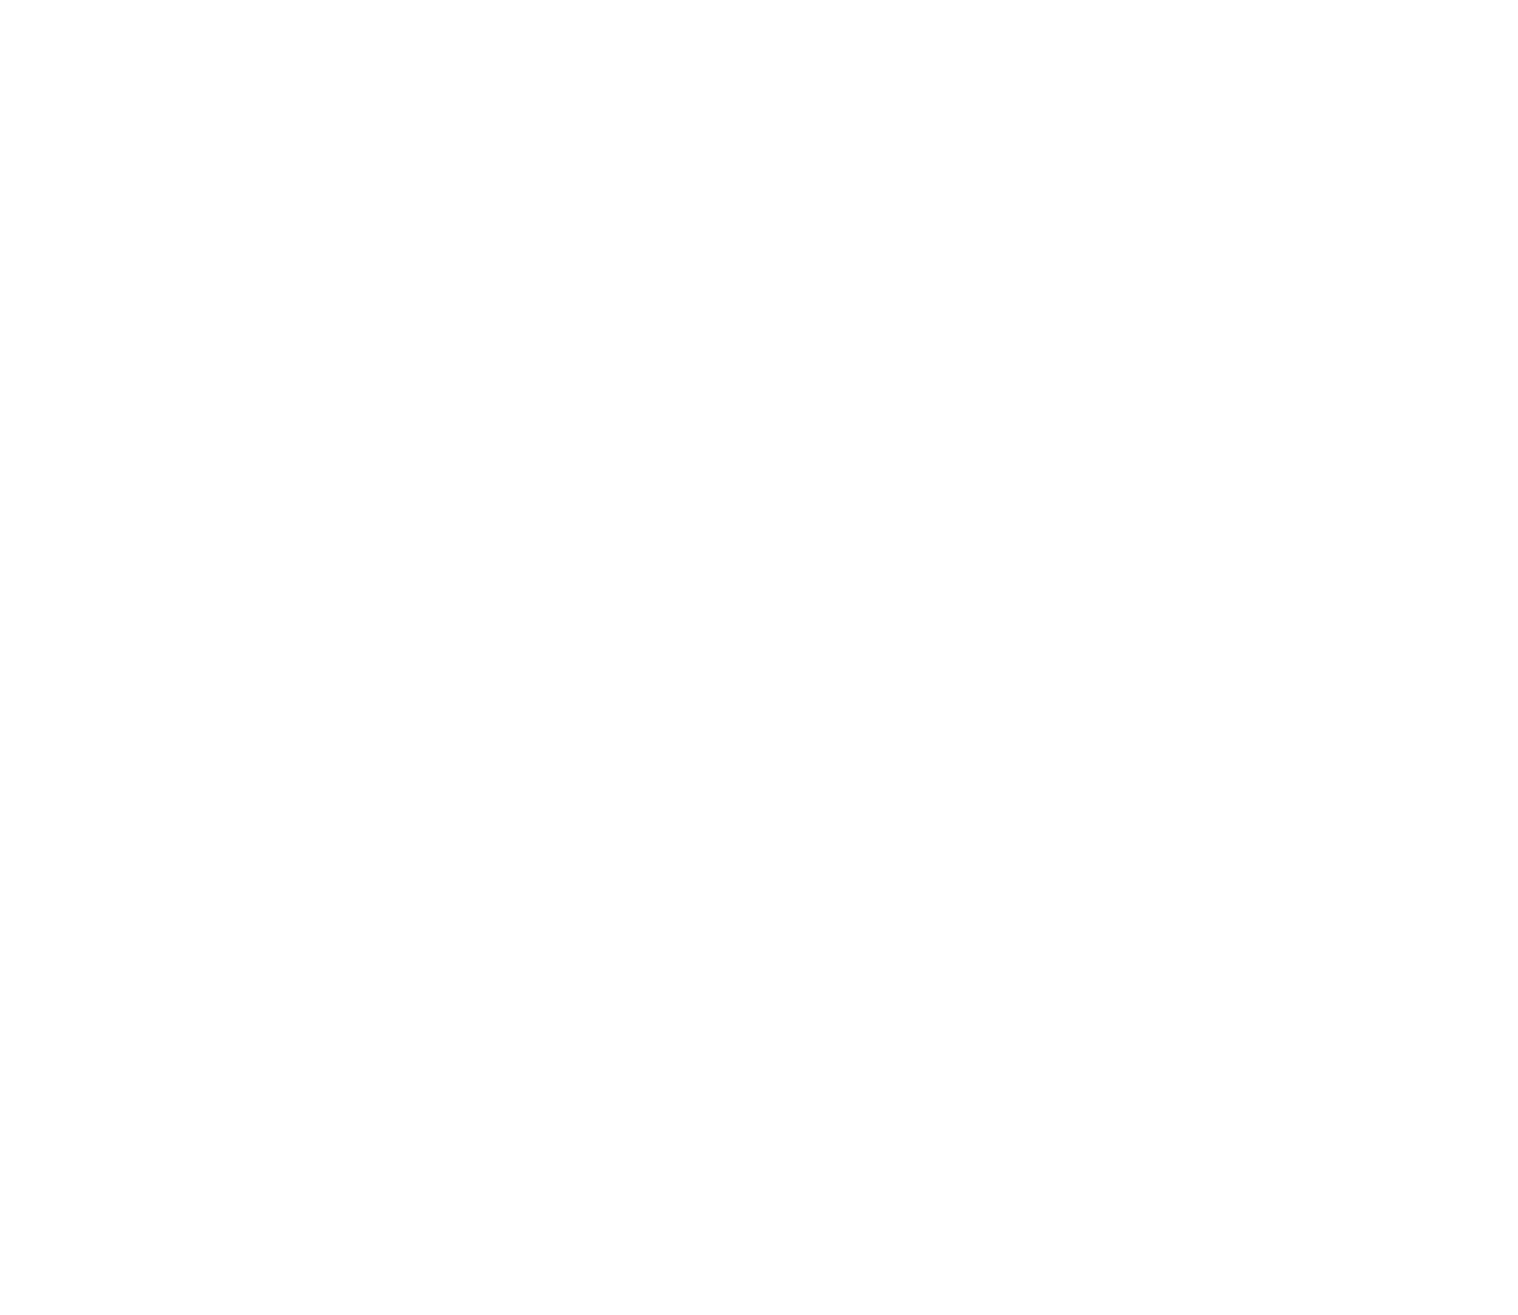 InterCure logo for dark backgrounds (transparent PNG)